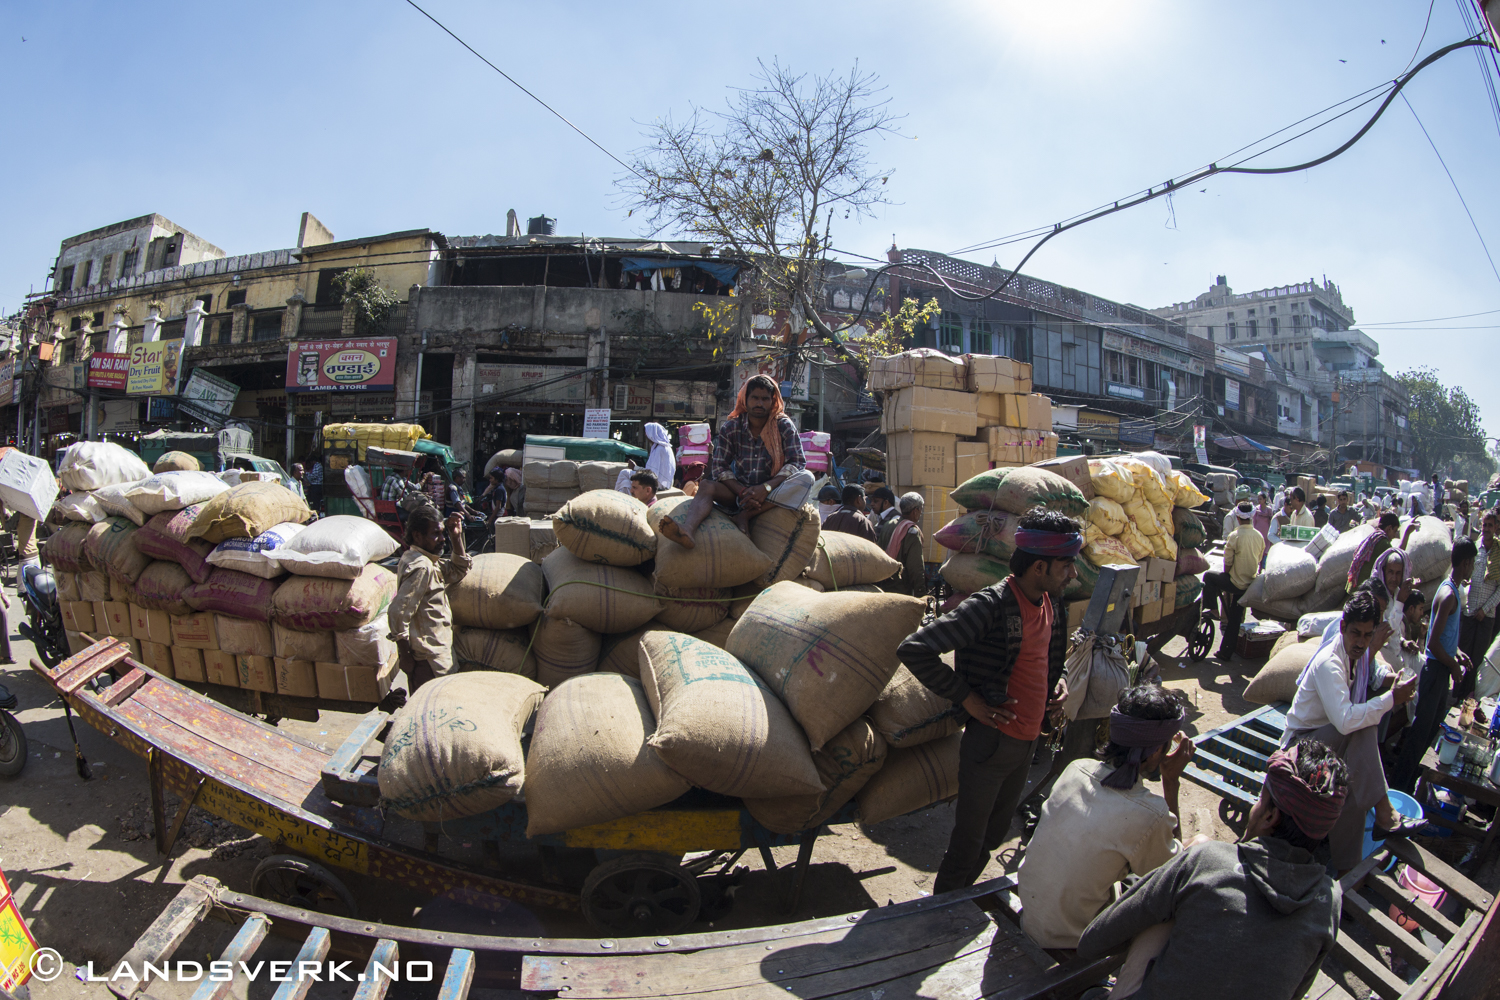 Old Delhi, India. 

(Canon EOS 5D Mark III / Canon EF 8-15mm f/4 L USM Fisheye)